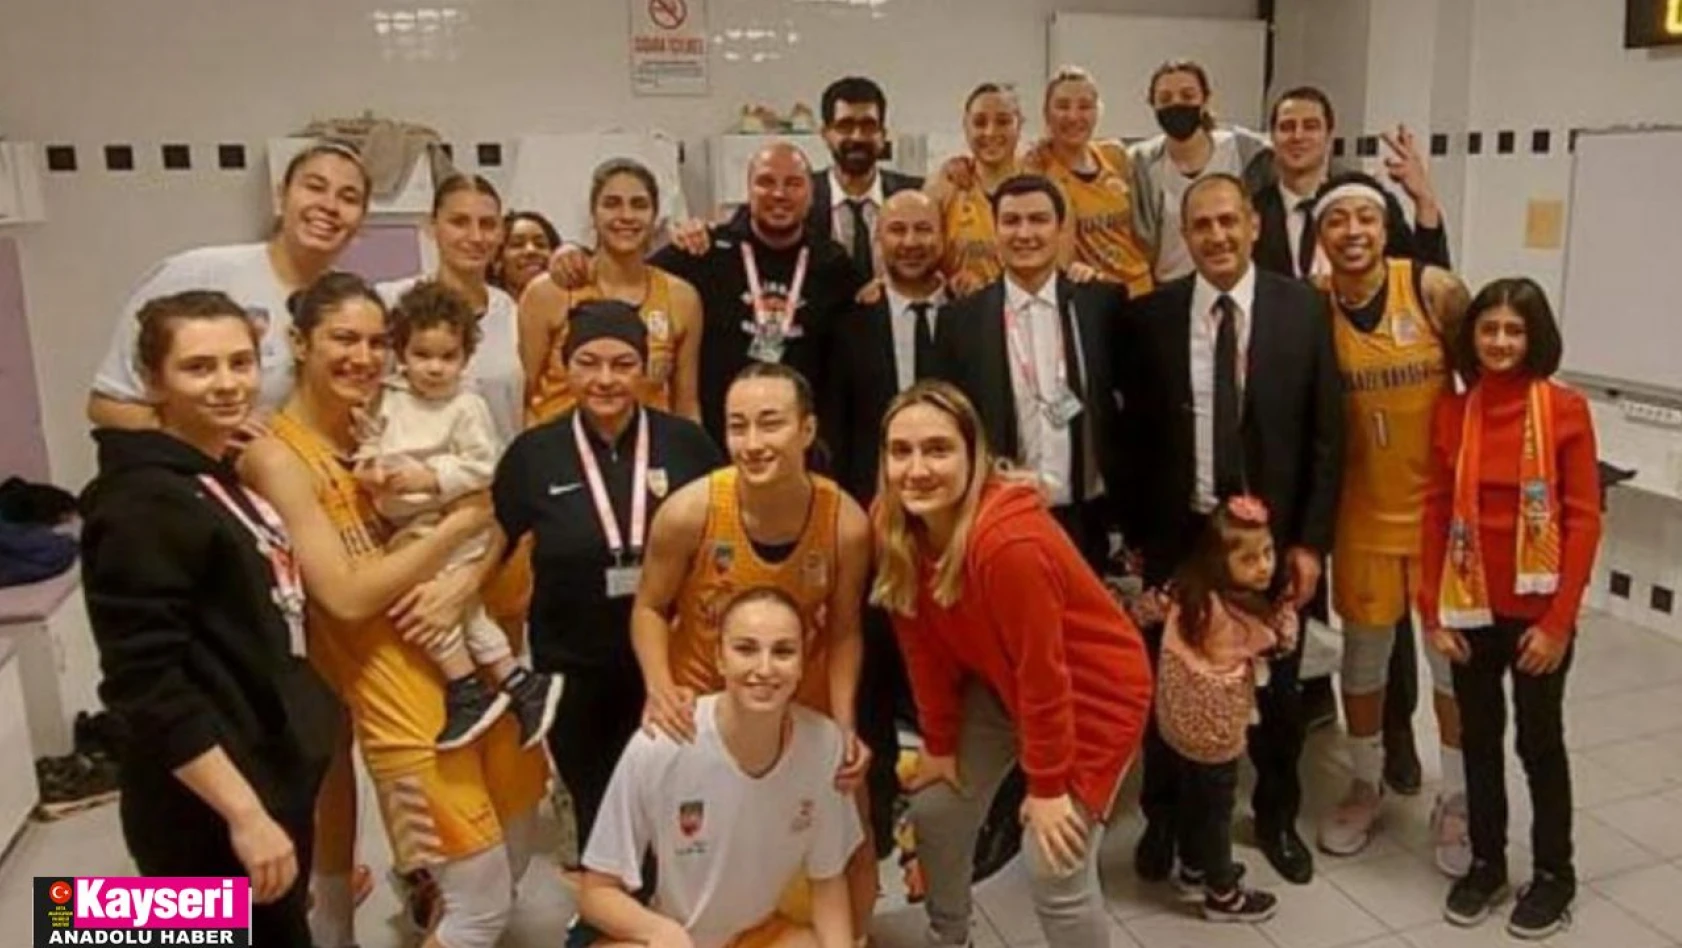 Melikgazi Kayseri Basketbol 5. galibiyetini aldı